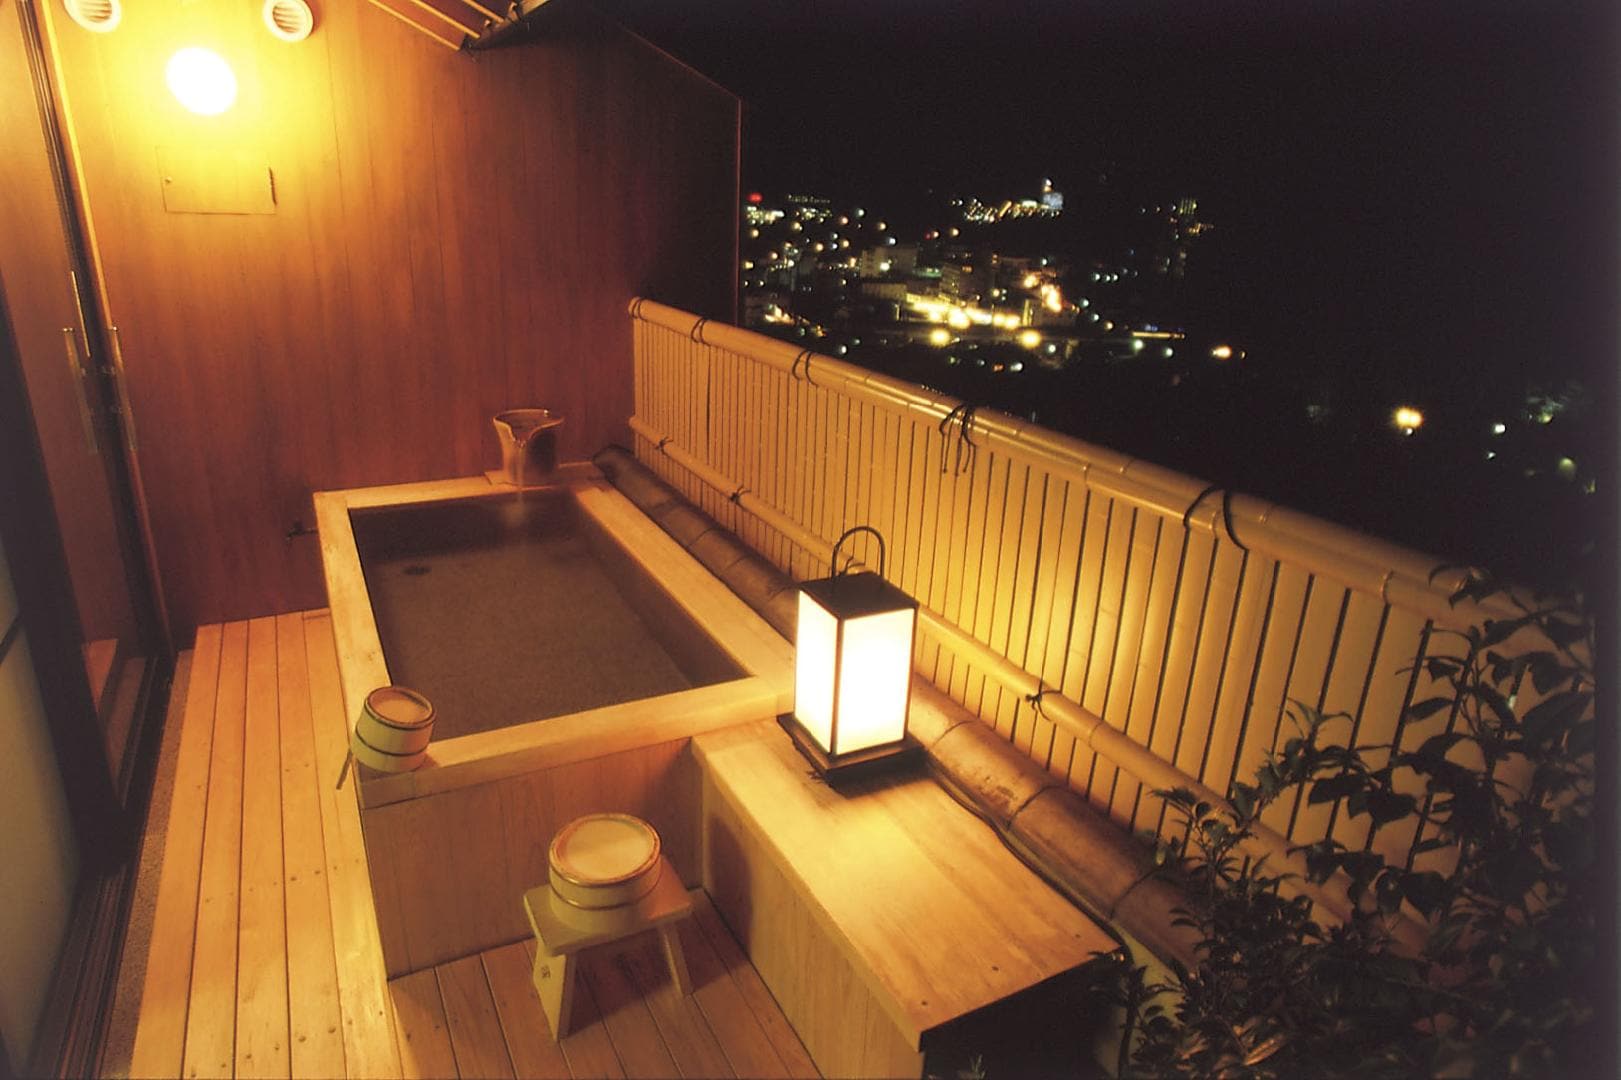 Himeyuri no Ma Open-air bath